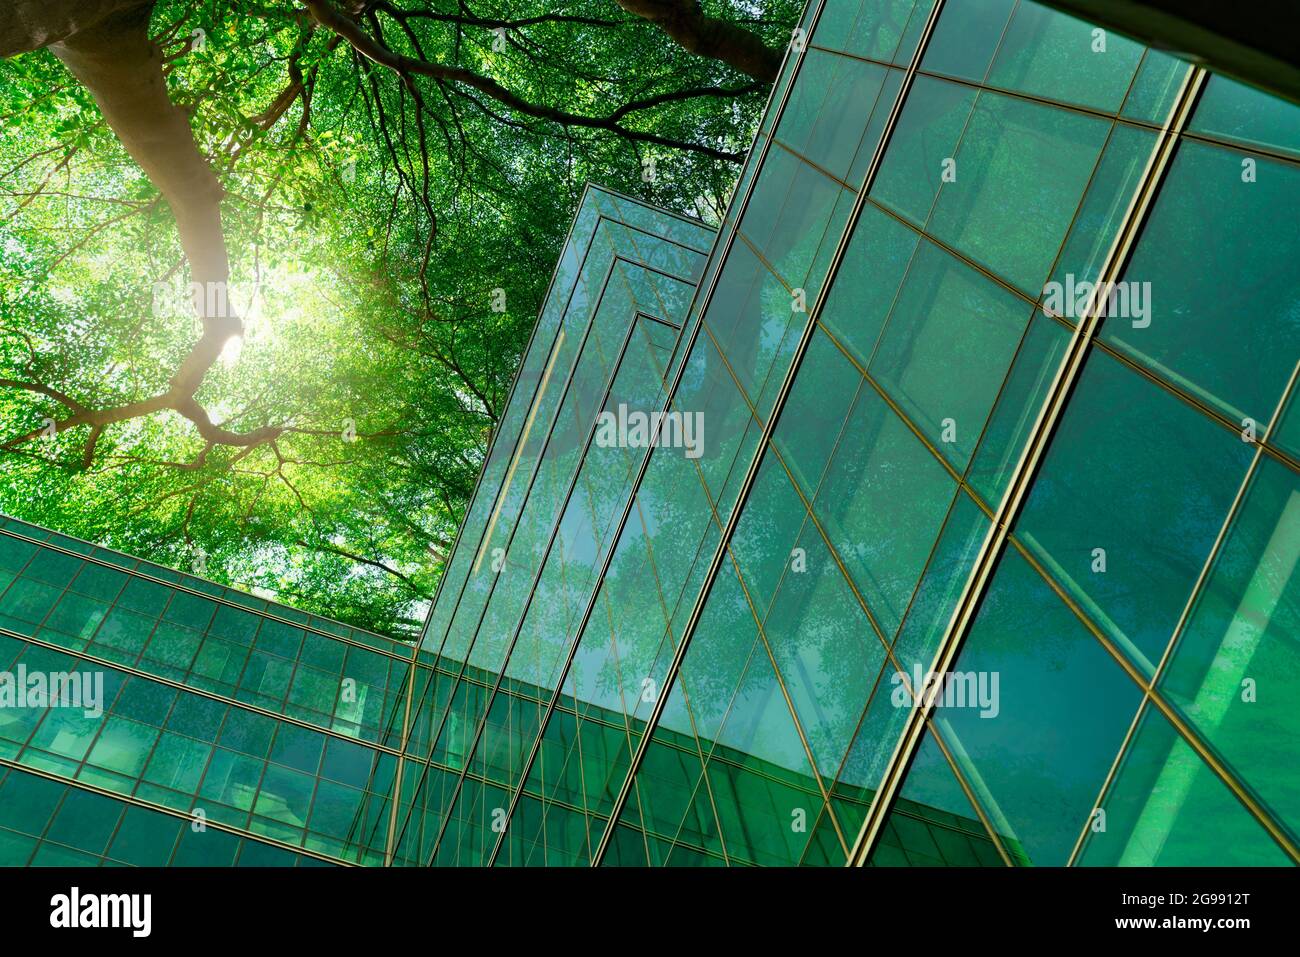 Bâtiment écologique dans la ville moderne. Branches d'arbres vertes avec feuilles et construction durable en verre pour réduire la chaleur et le dioxyde de carbone. Bureau Banque D'Images